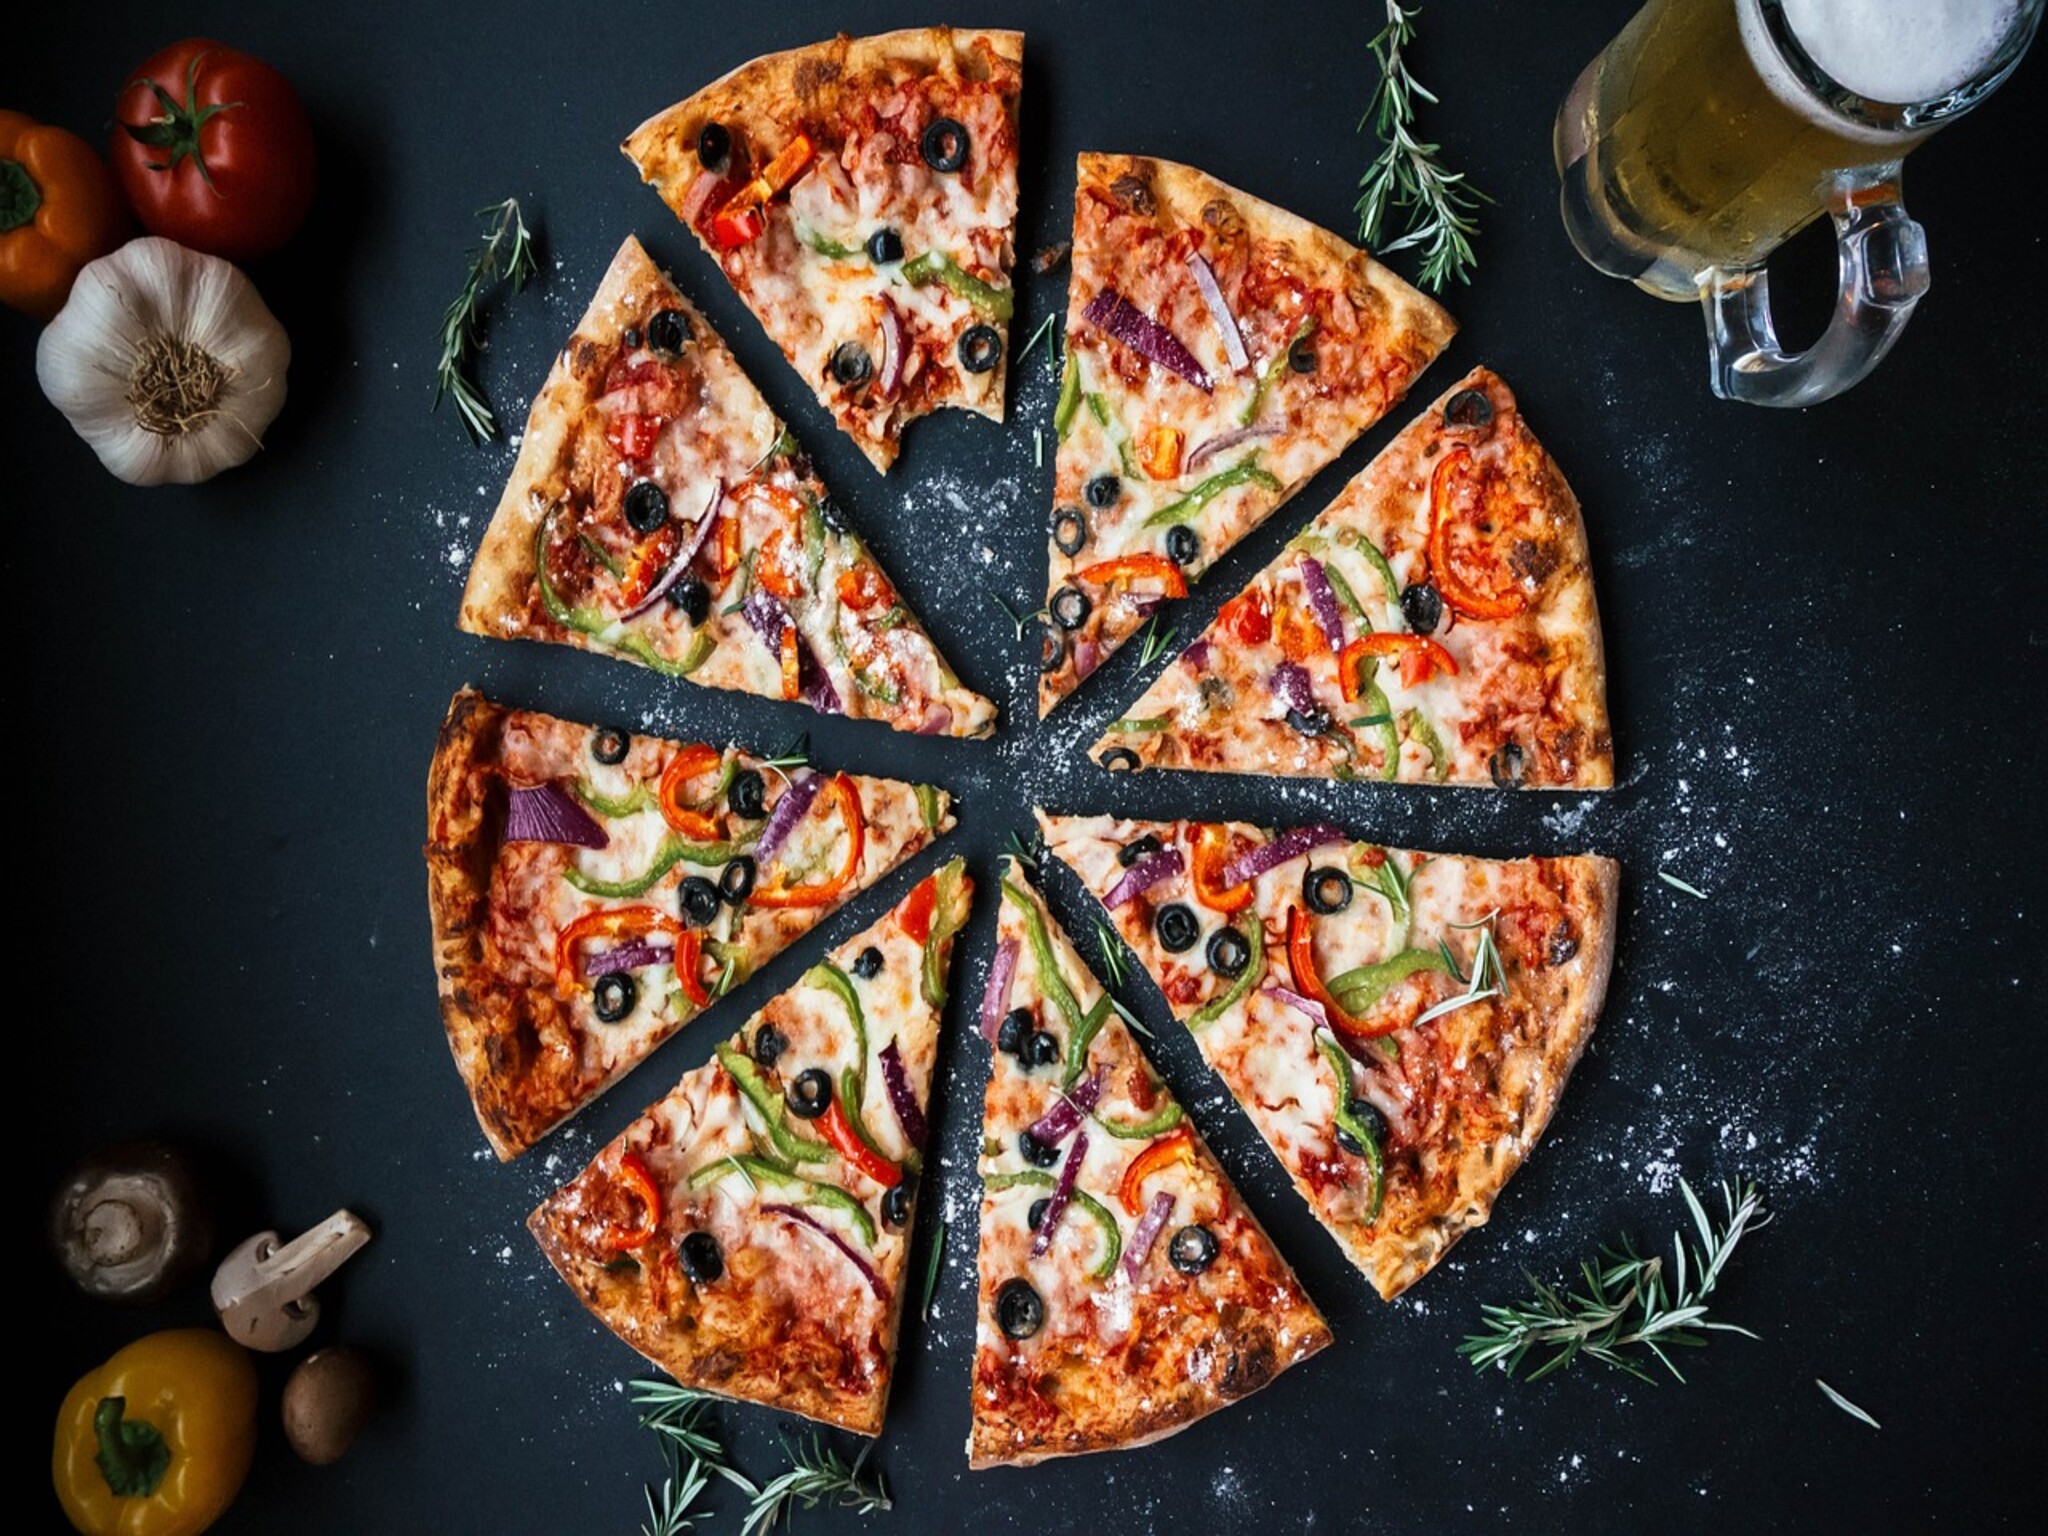 طريقة إعداد البيتزا الإيطالي بمكونات بسيطة من المنزل وبأقل التكاليف